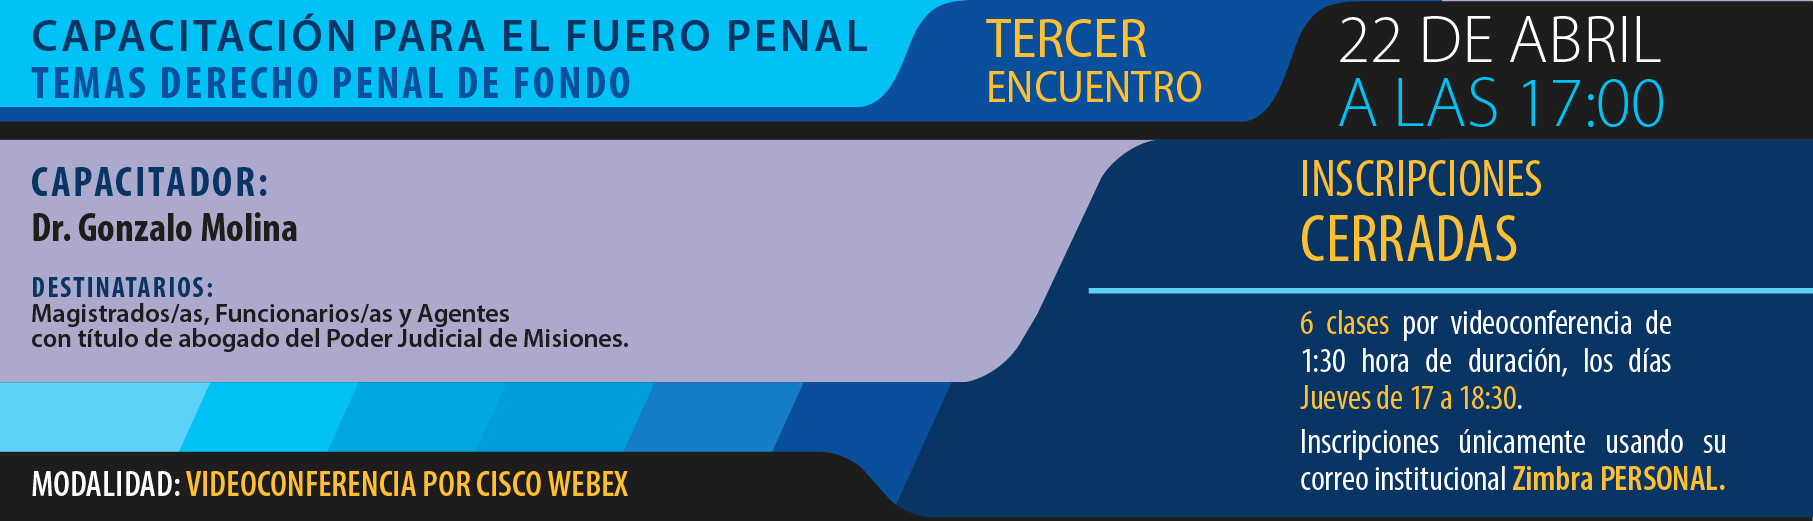 InC_P3_curso_cap_fuero_penal-01